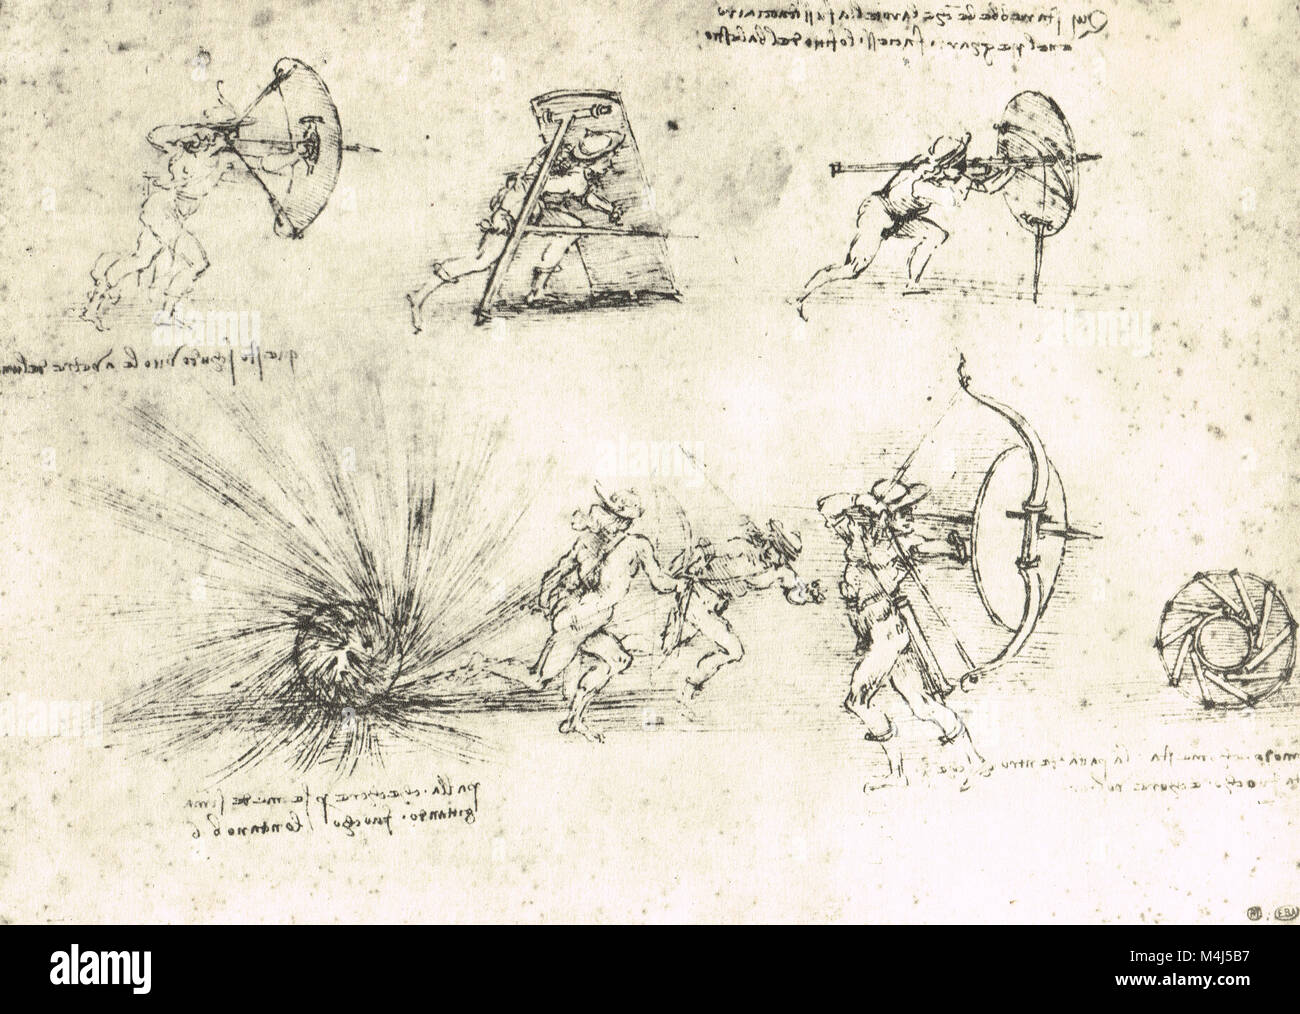 Des études Shields pour la protection de soldats de pied, et l'explosion d'une bombe, dessiné par Léonard de Vinci, vers 1485-88 Banque D'Images